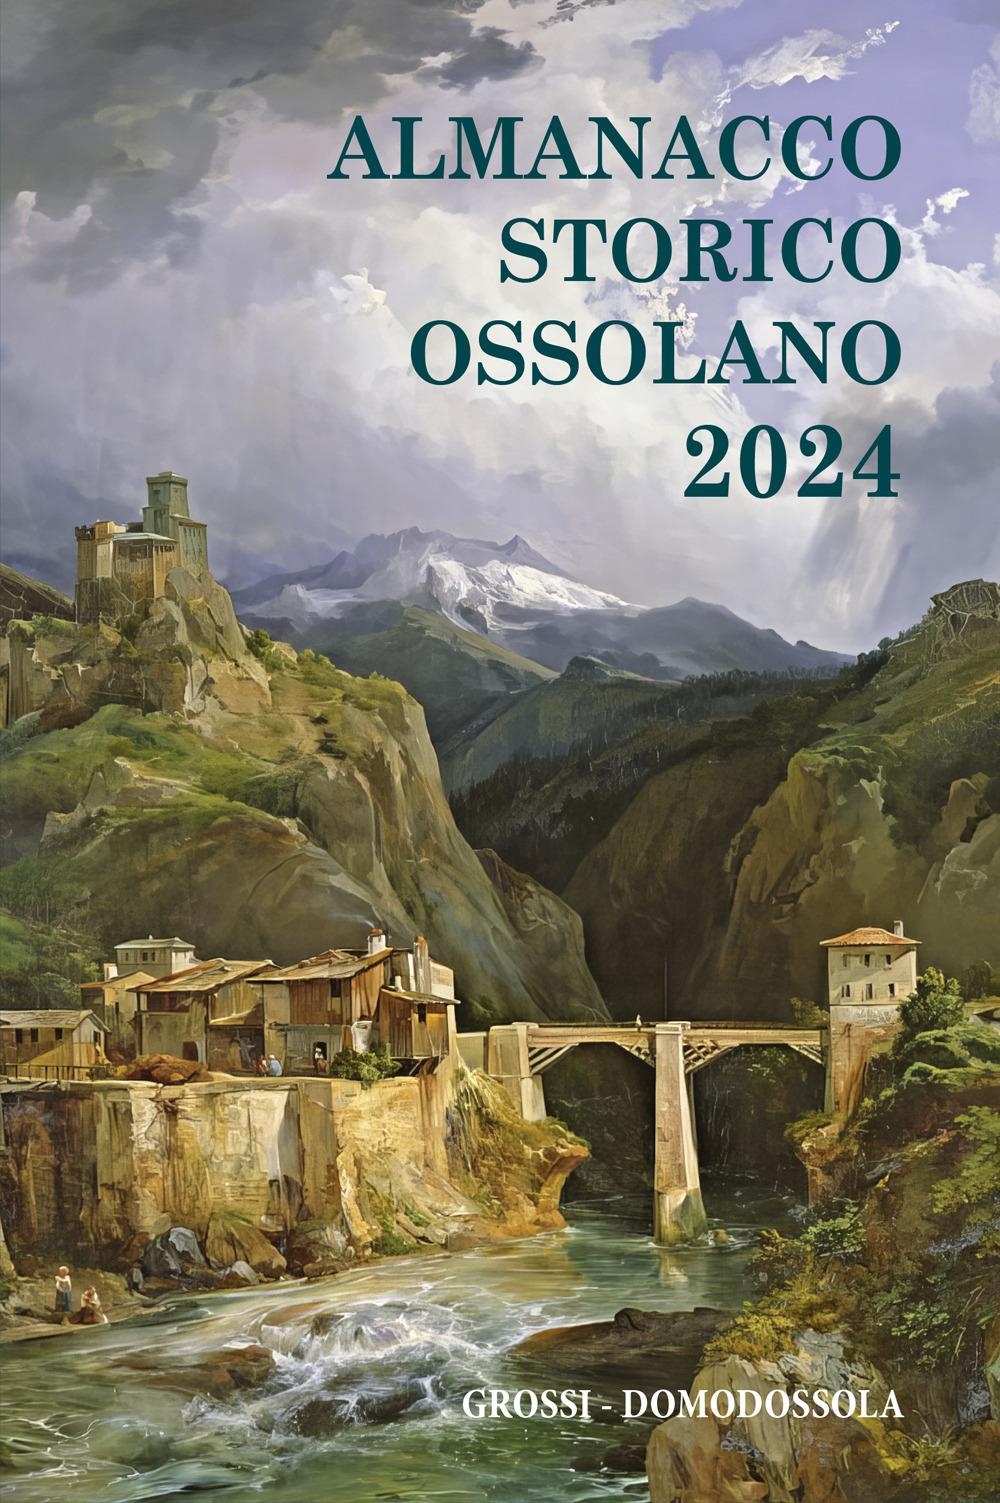 Libri Almanacco Storico Ossolano 2024 NUOVO SIGILLATO, EDIZIONE DEL 01/12/2023 SUBITO DISPONIBILE